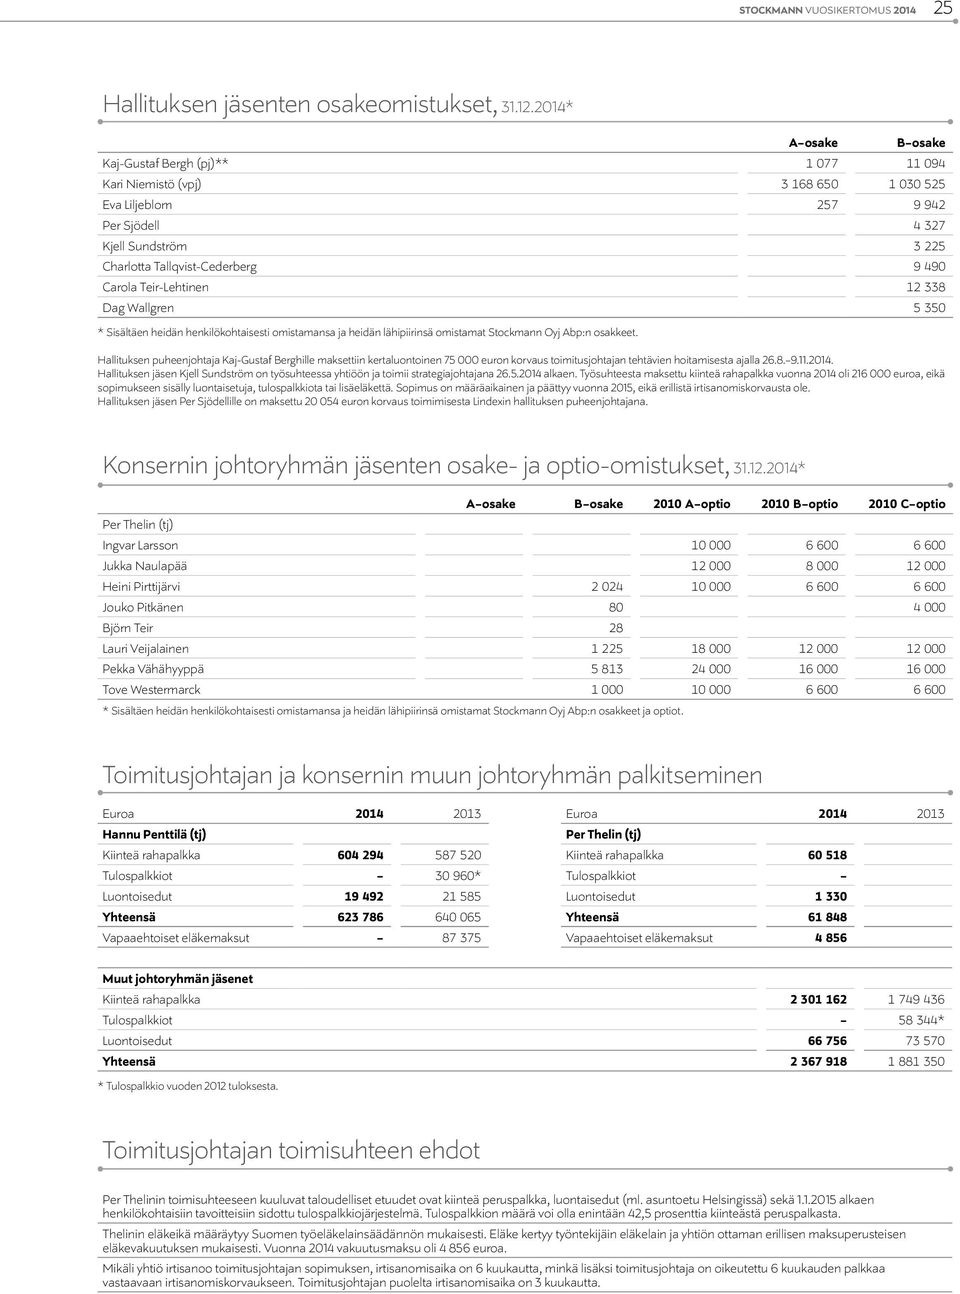 Carola Teir-Lehtinen 12 338 Dag Wallgren 5 350 * Sisältäen heidän henkilökohtaisesti omistamansa ja heidän lähipiirinsä omistamat Stockmann Oyj Abp:n osakkeet.